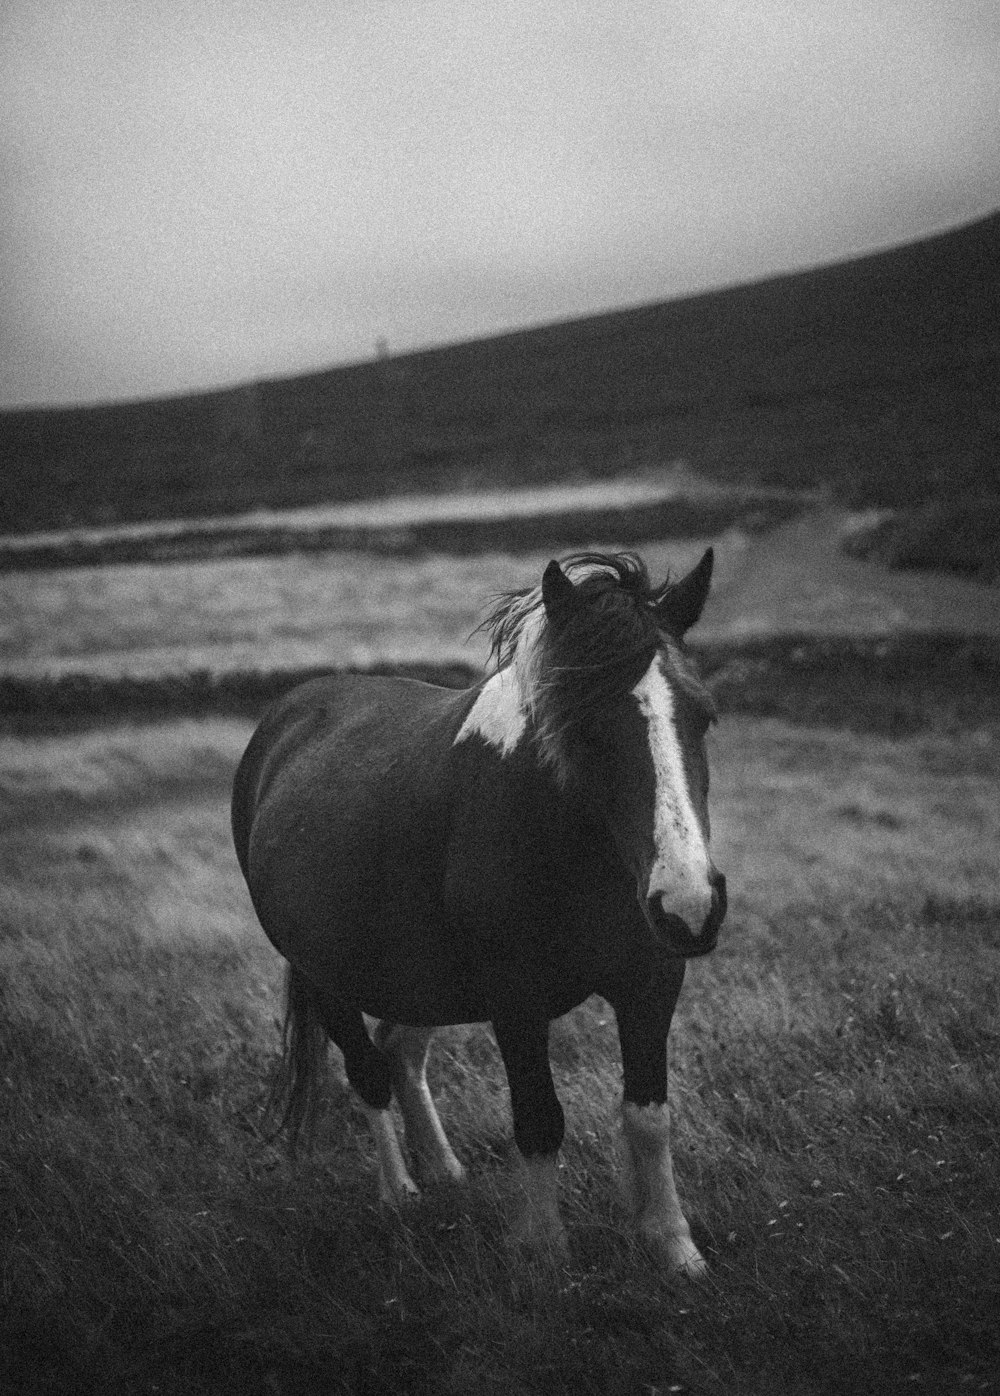 잔디밭에 말의 그레이스케일 사진